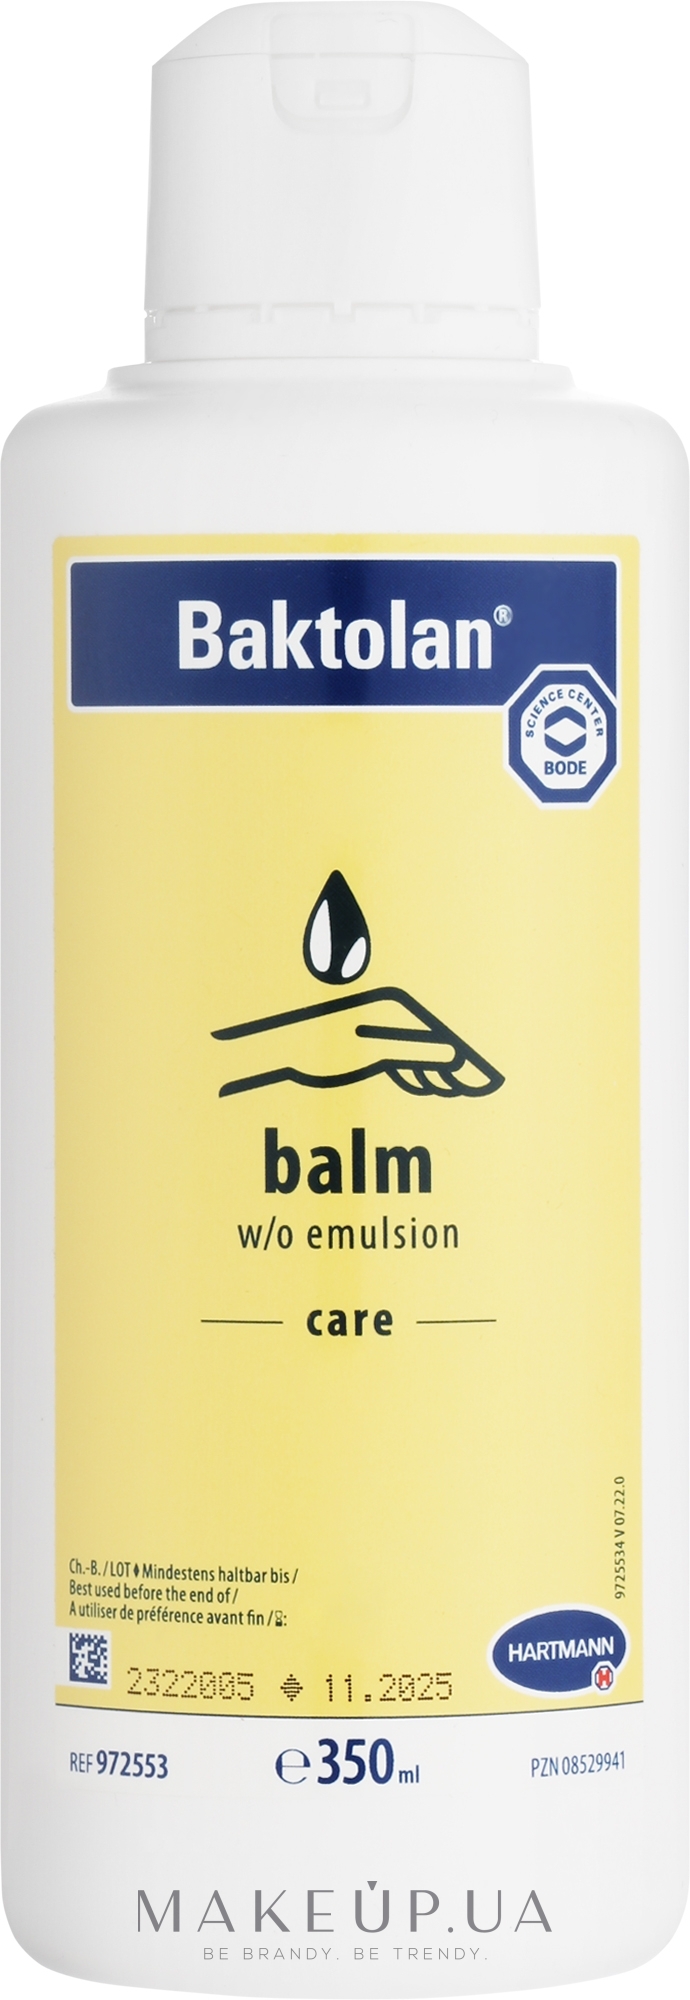 Hartmann Baktolan® lotion pure care lotion - 350 ml bottle